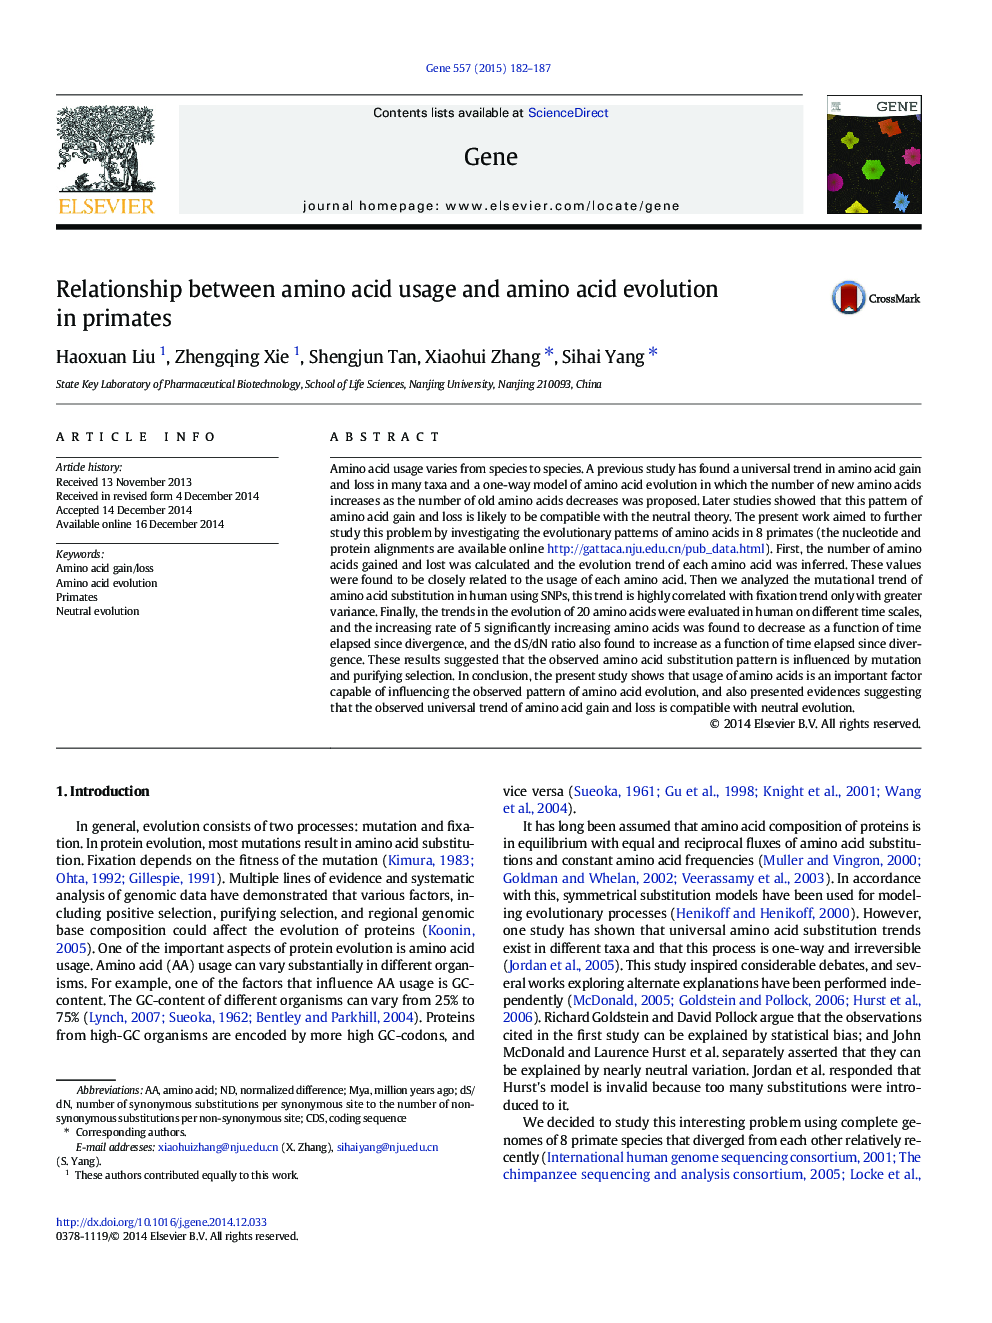 ارتباط بین استفاده از آمینو اسید و تکاملی اسید آمینه در اولات 